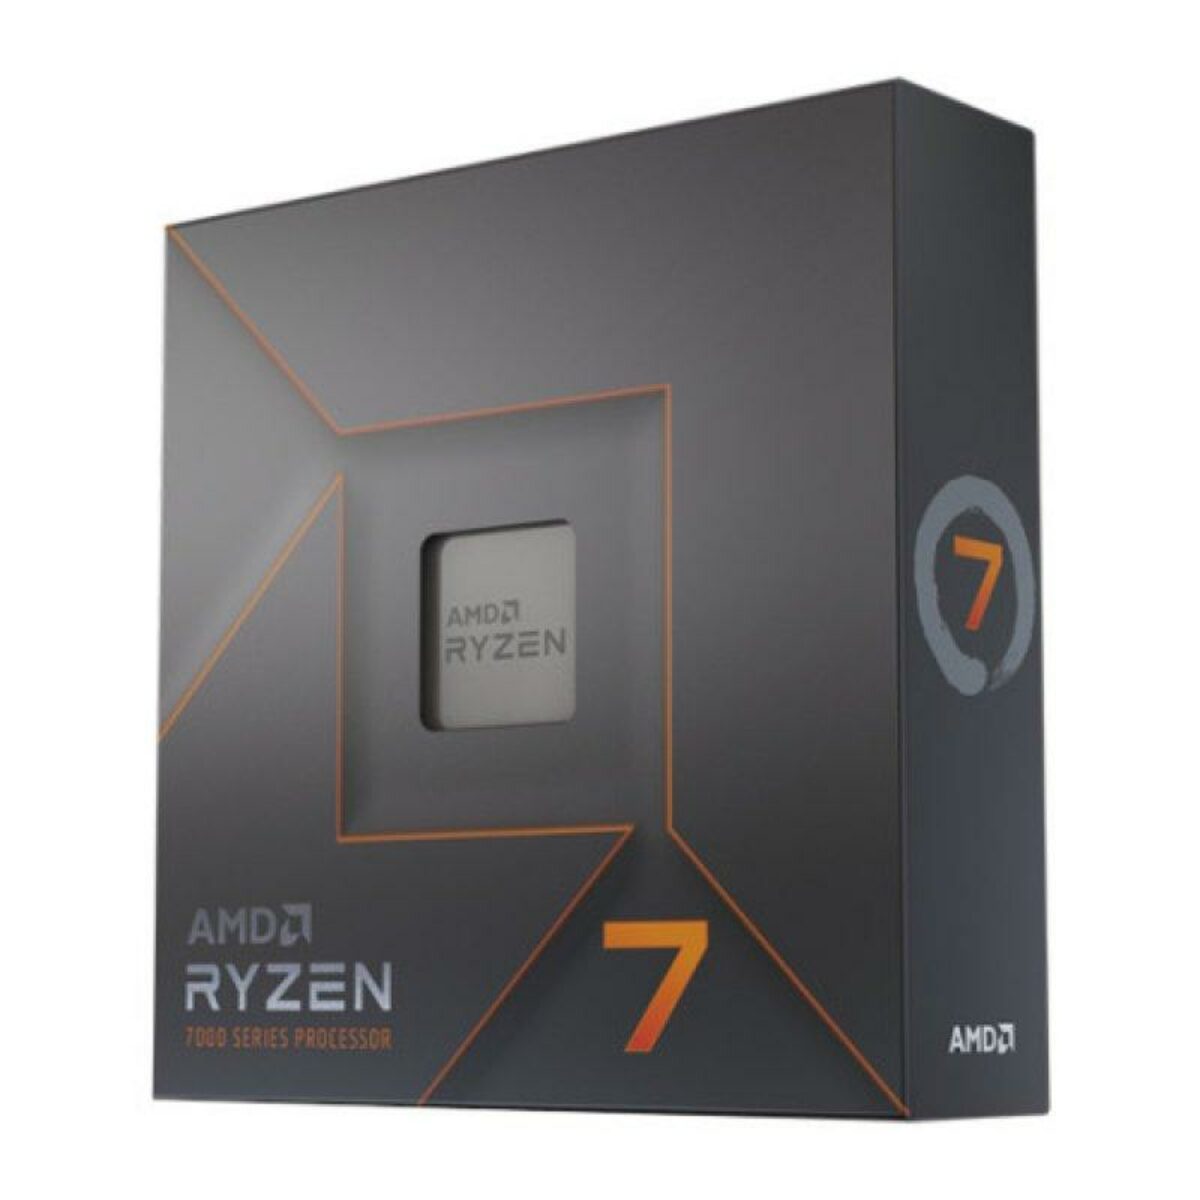 AMD Ryzen 9 3950X - Ryzen 9 3rd Gen 16-Core 3.5 GHz Socket AM4 105W Desktop  Processor - 100-100000051WOF 